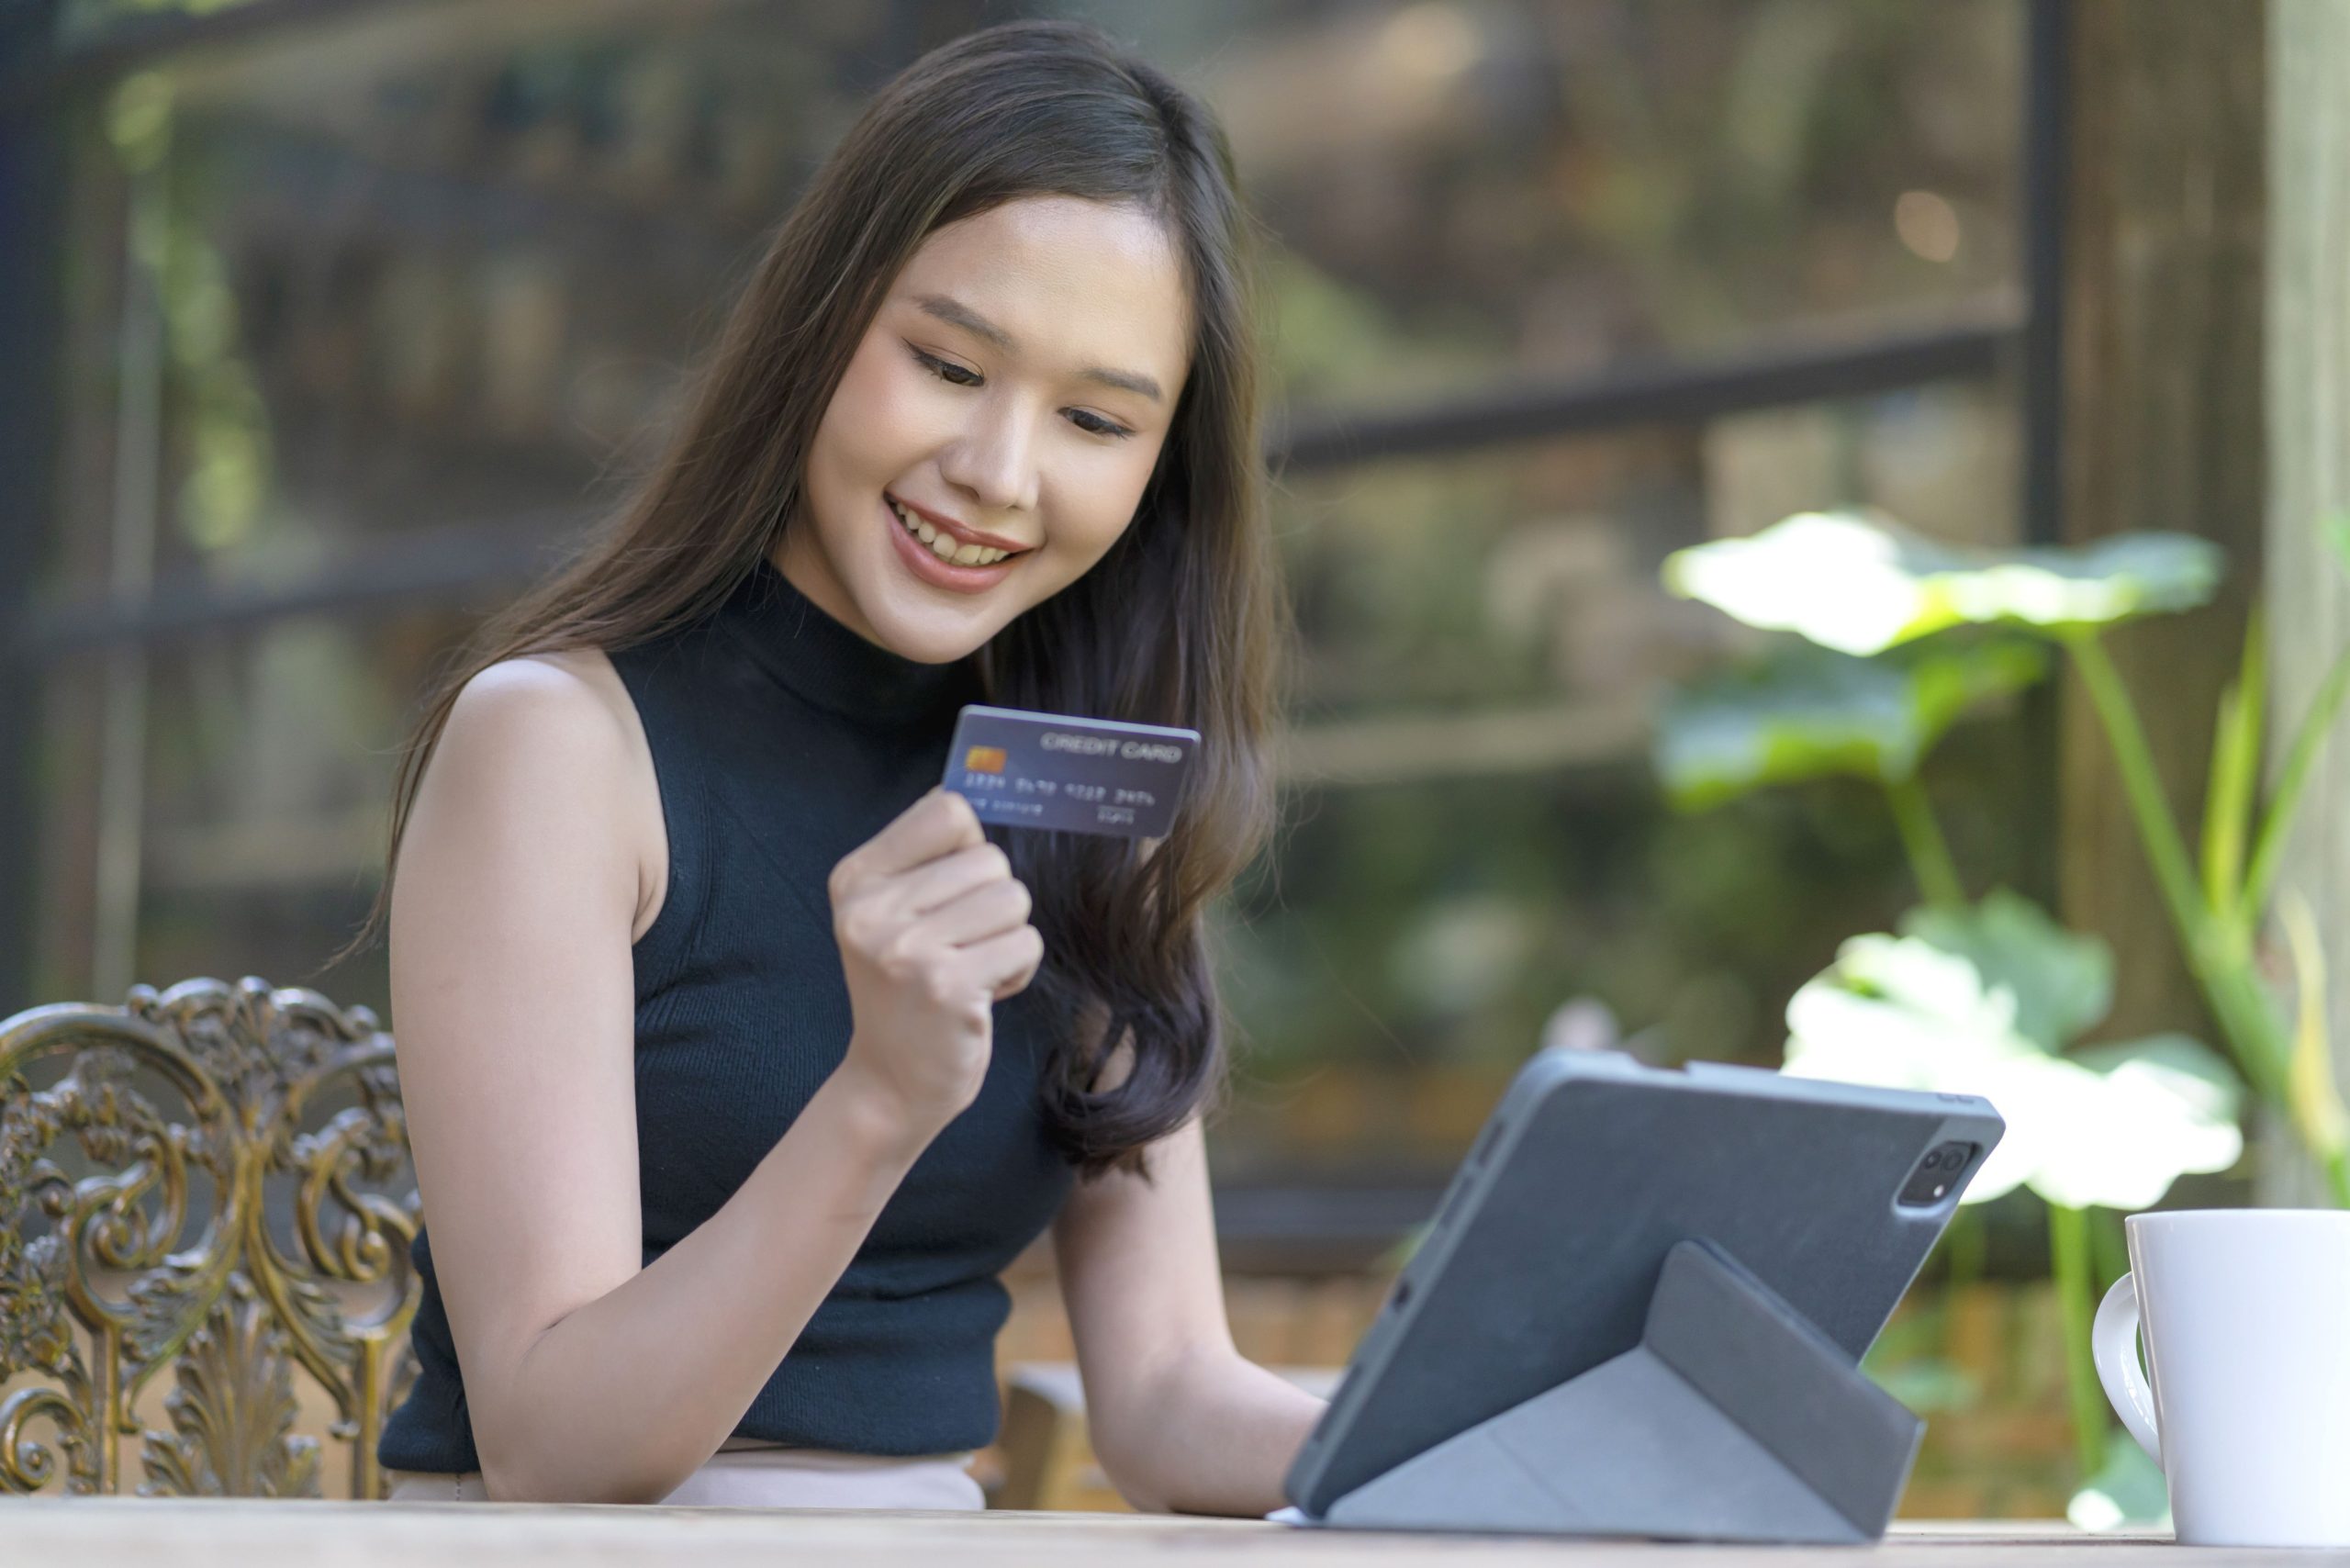 A imagem é de uma mulher asiática jovem, branca, de cabelos castanhos escuros e blusa preta sentada em uma mesa olhando um cartão de crédito azul escuro e sorrindo. Em frente a ela há um tablet preto apoiado na mesa.